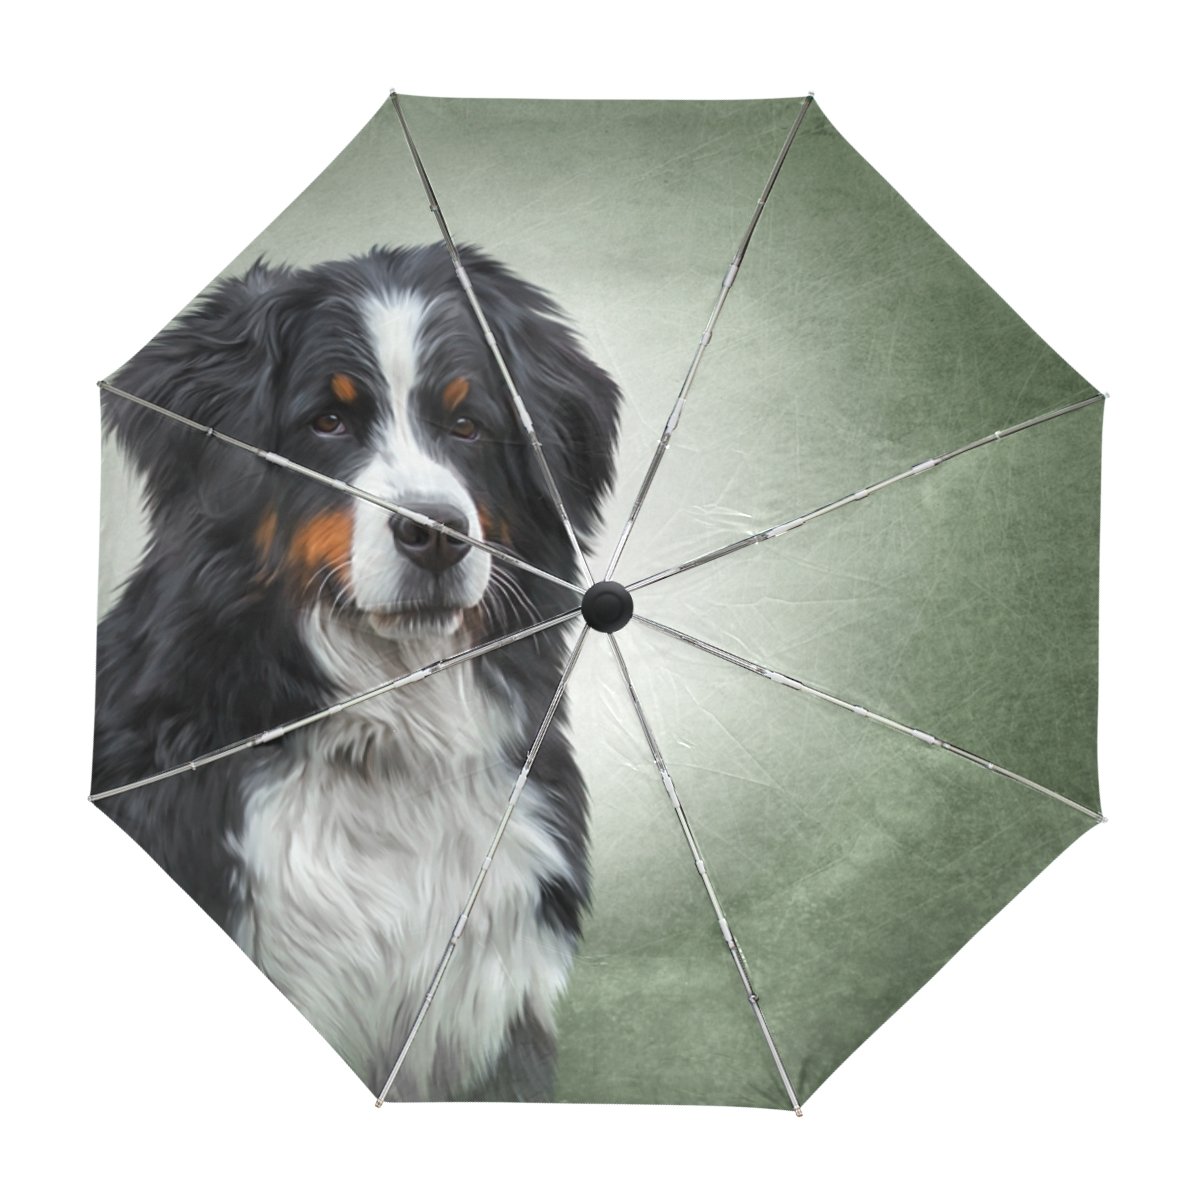 ALAZA Berner Sennenhund Vintage Reise Regenschirm Auto Öffnen Schließen UV-Schutz-windundurchlässiges Leichtes Regenschirm